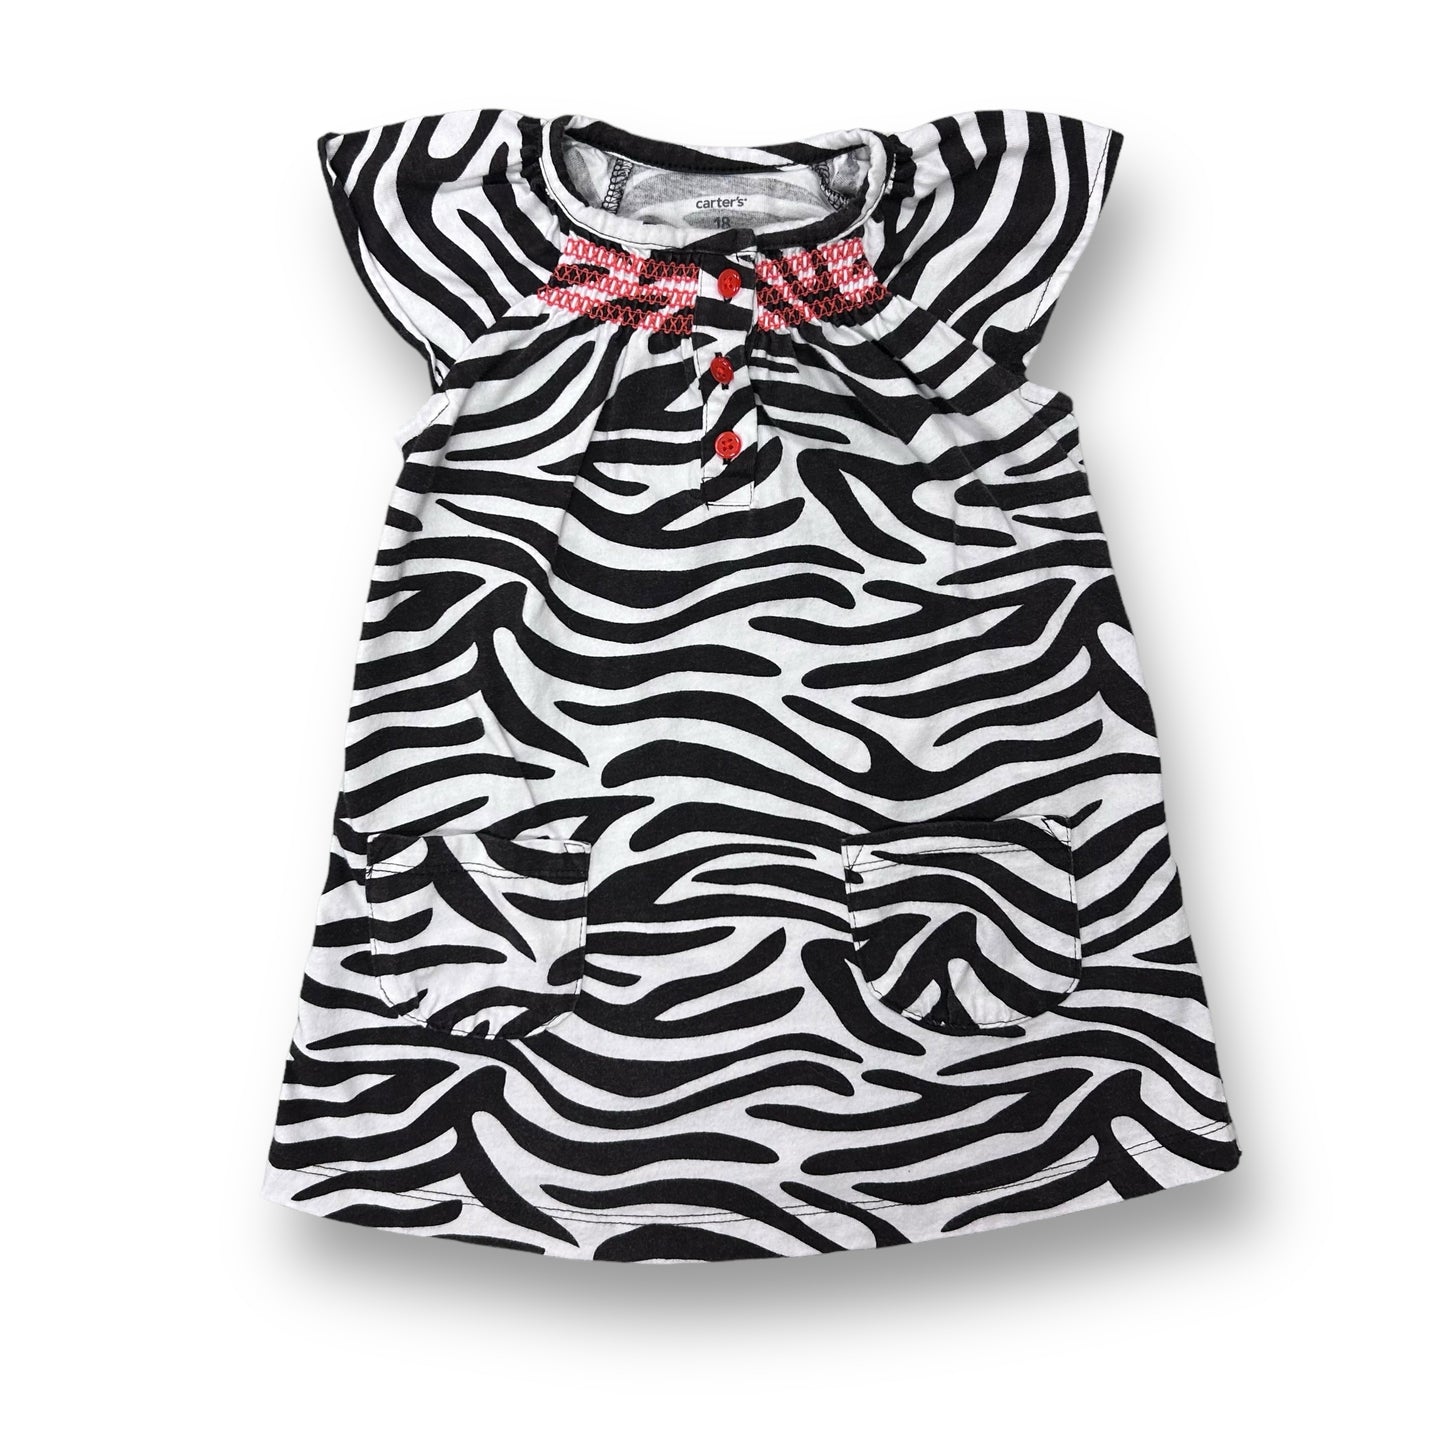 Girls Carter's Size 18 Months Brown Zebra Print Dress & Bloomers